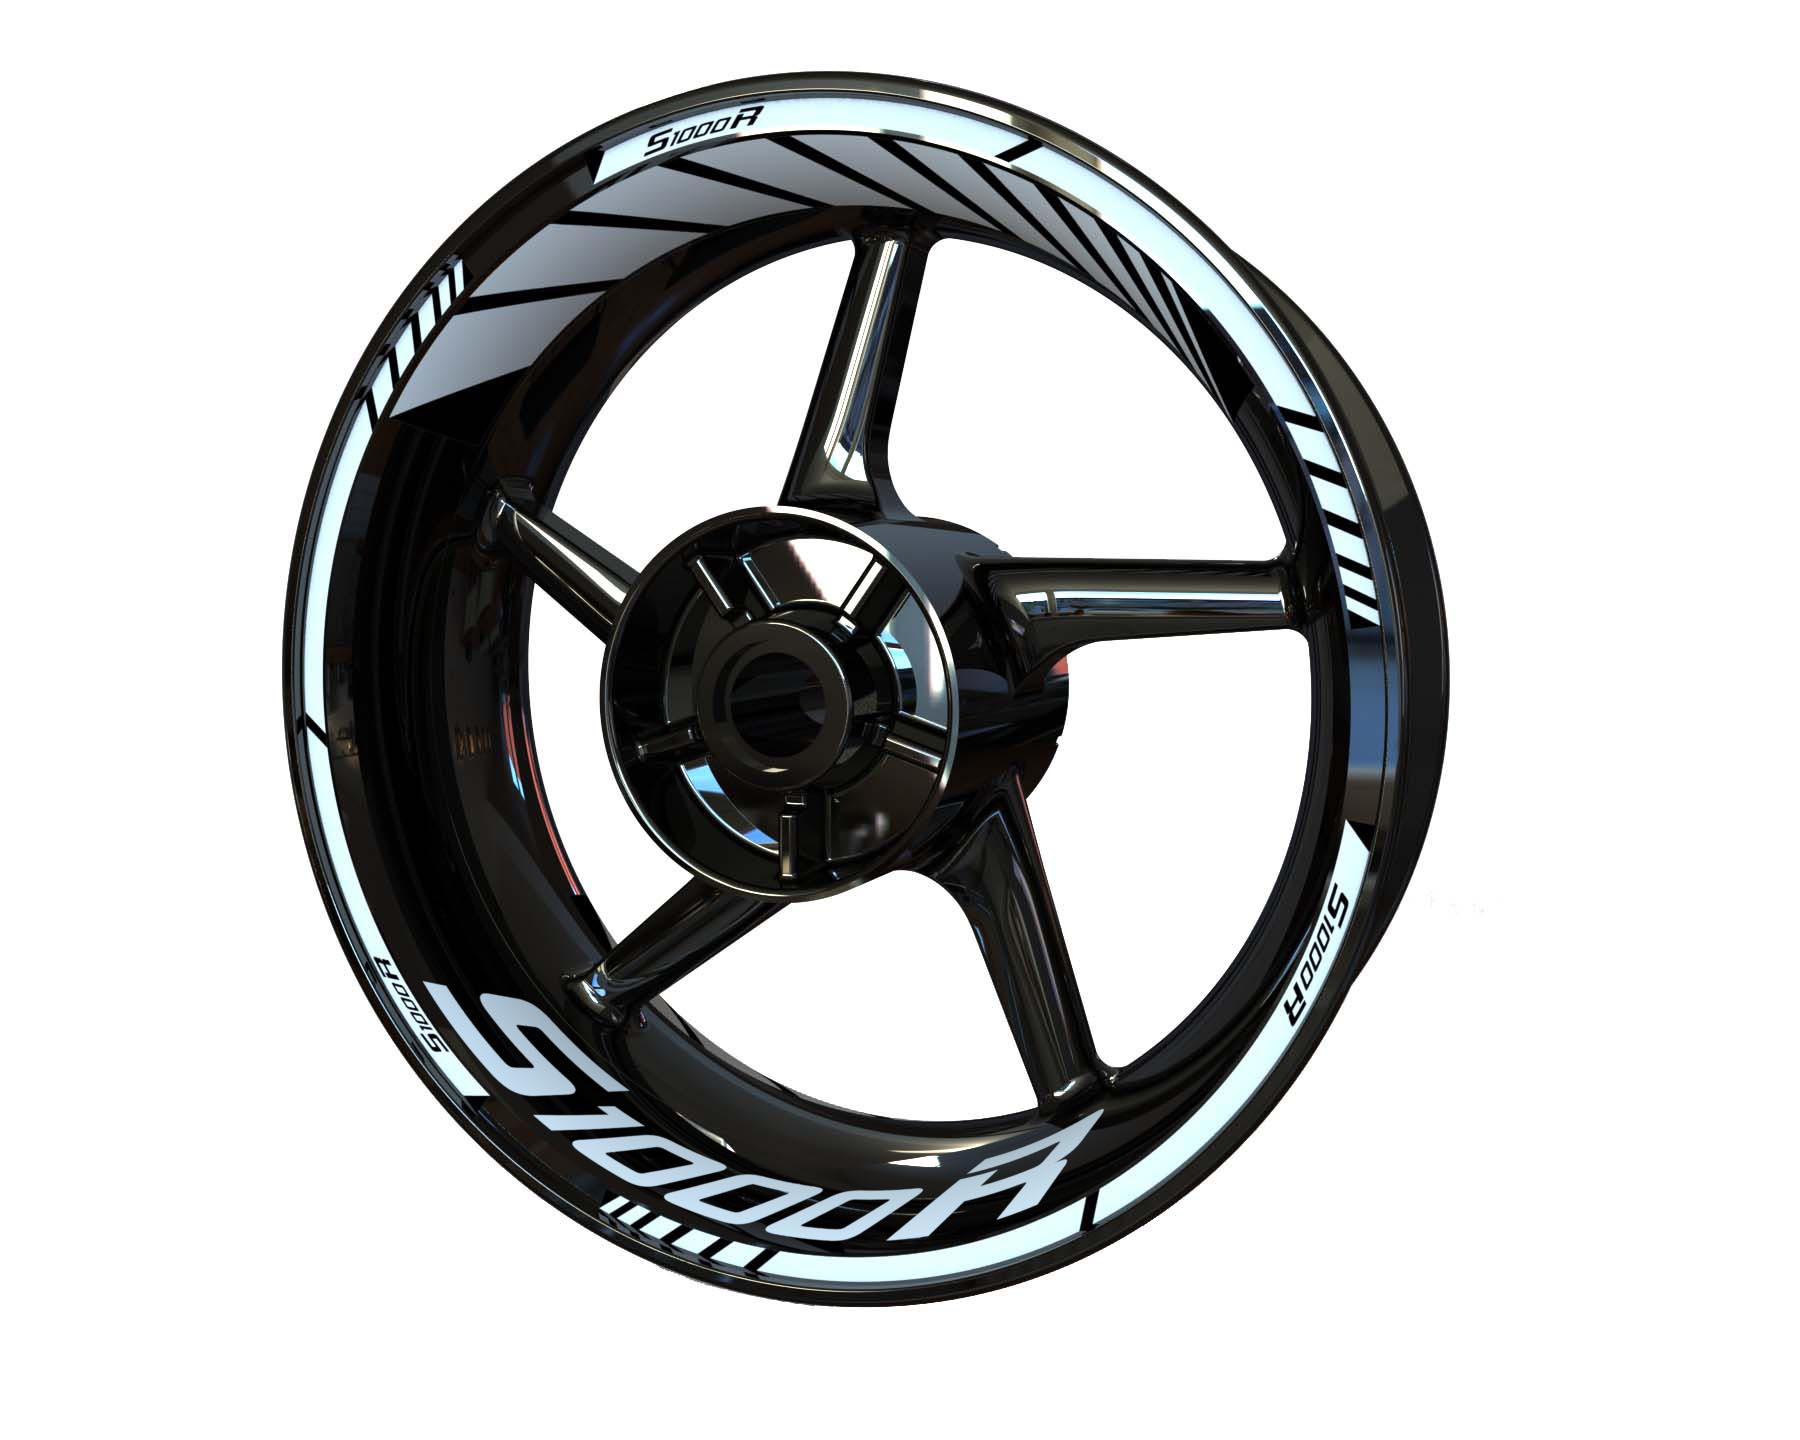 BMW S1000R Wheel Stickers - Standard Design